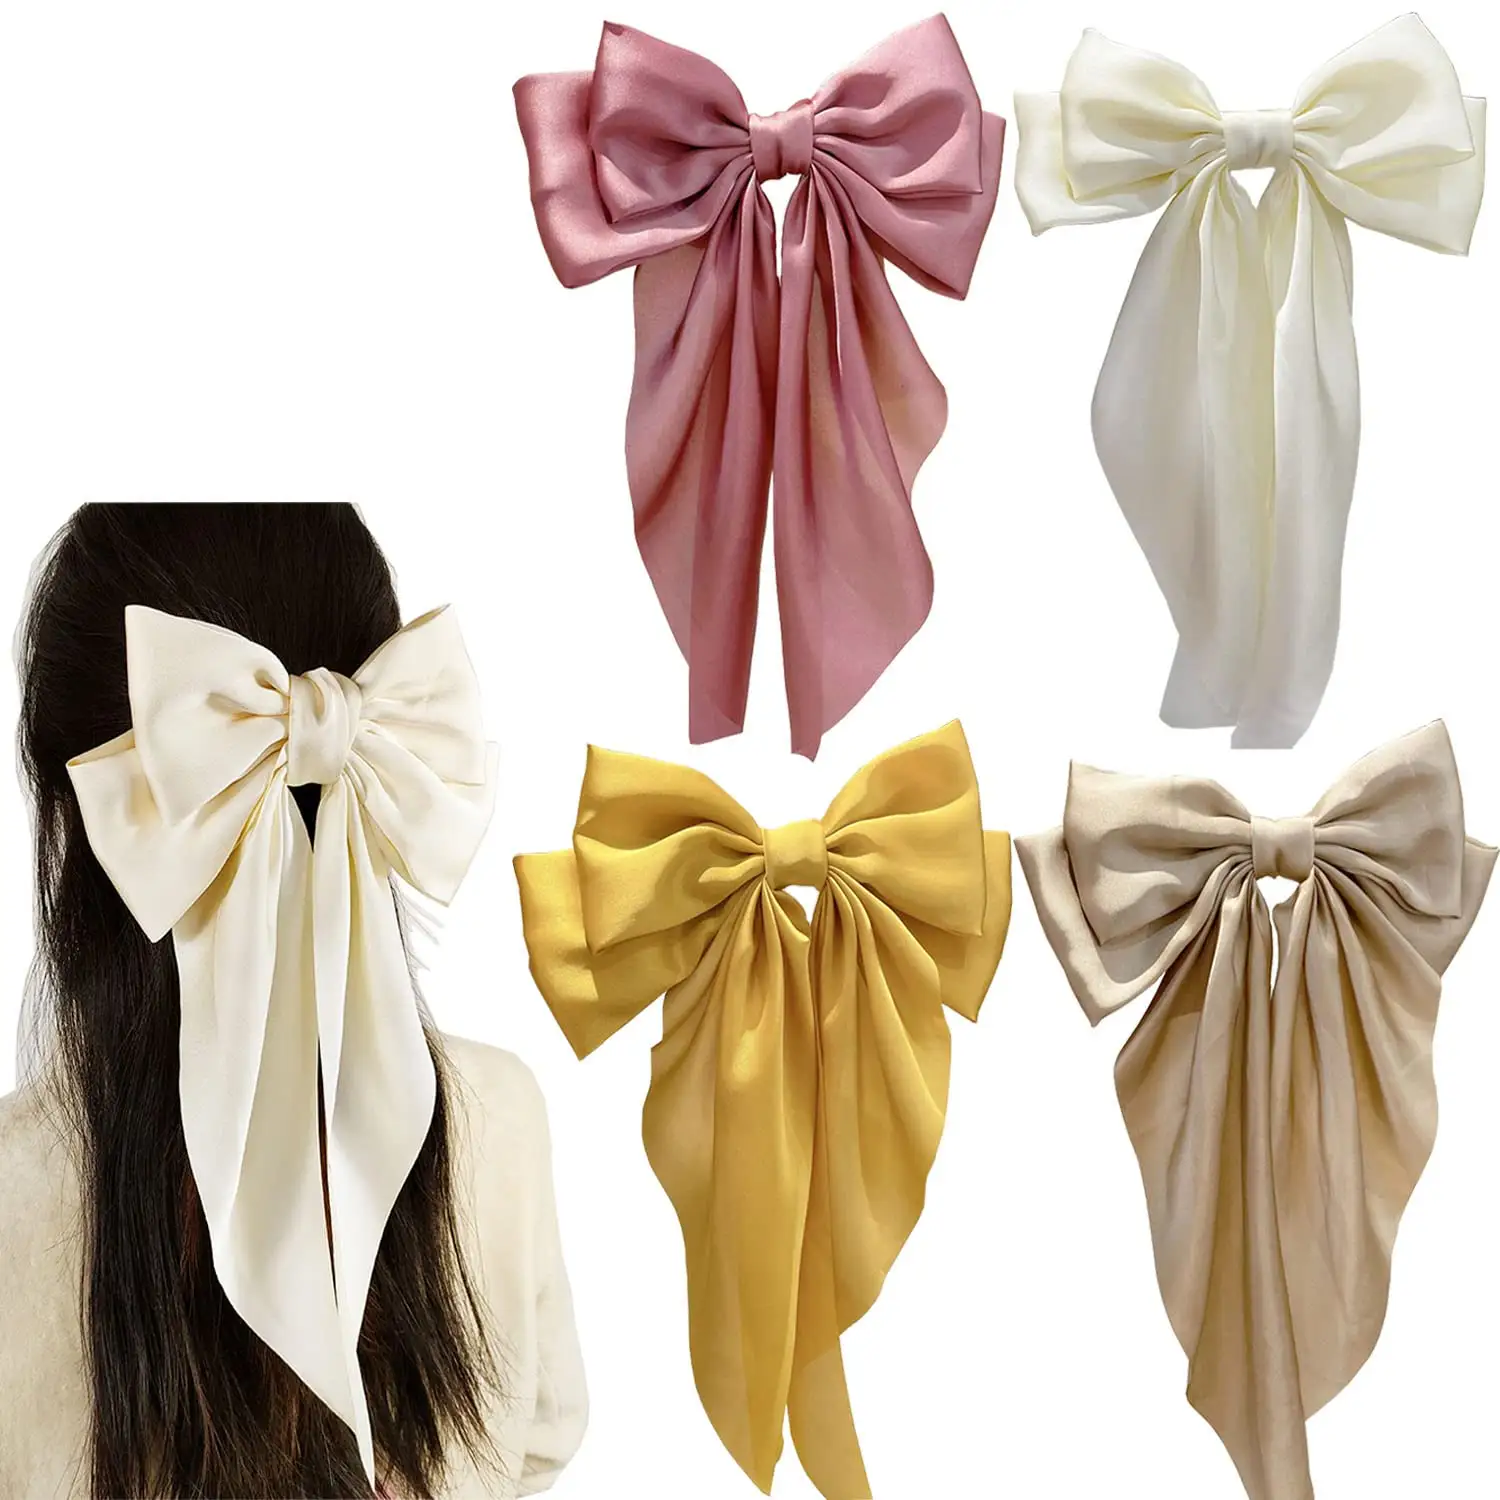 Satin Hair Bows Big Ribbon Bows Hair Barrettes Clip Hair Accessories for Women Girls